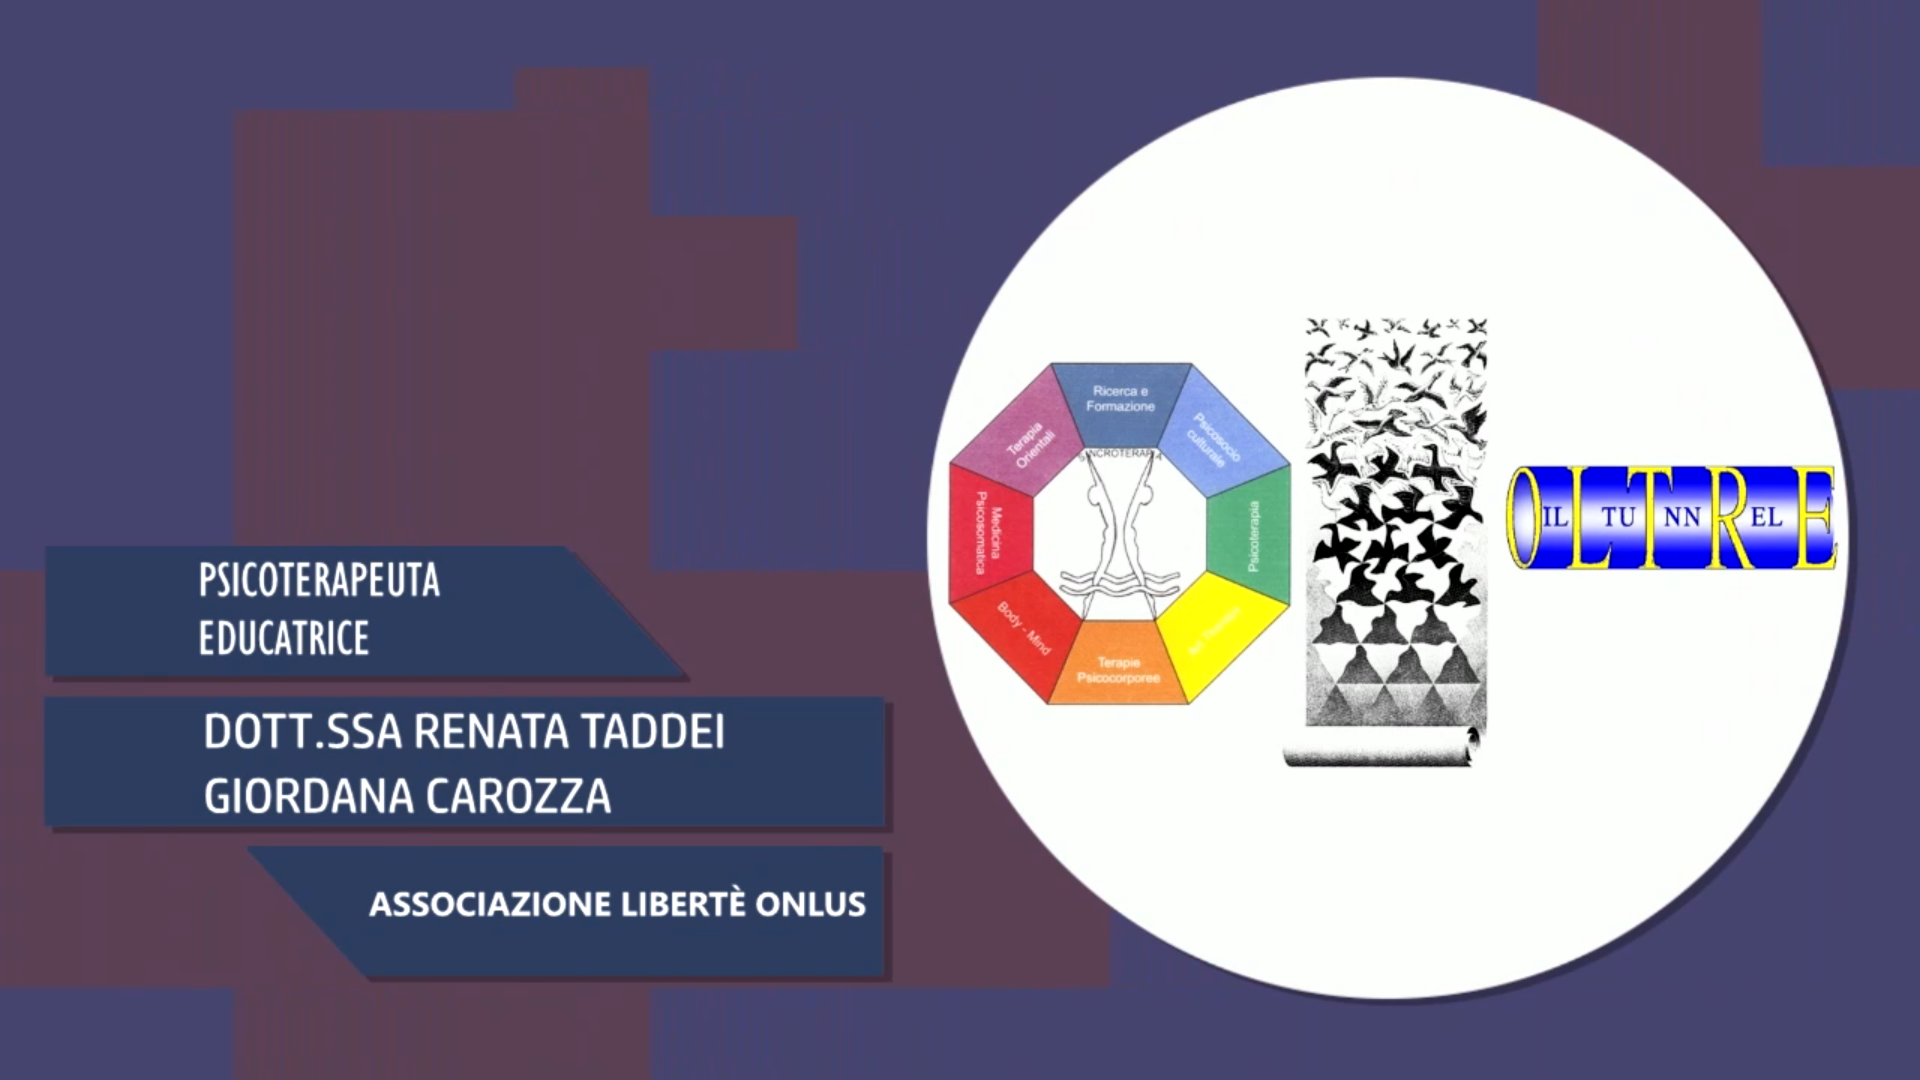 Intervista alla Dott.ssa Renata Taddei & Giordana Carozza – Associazione Libertè Onlus